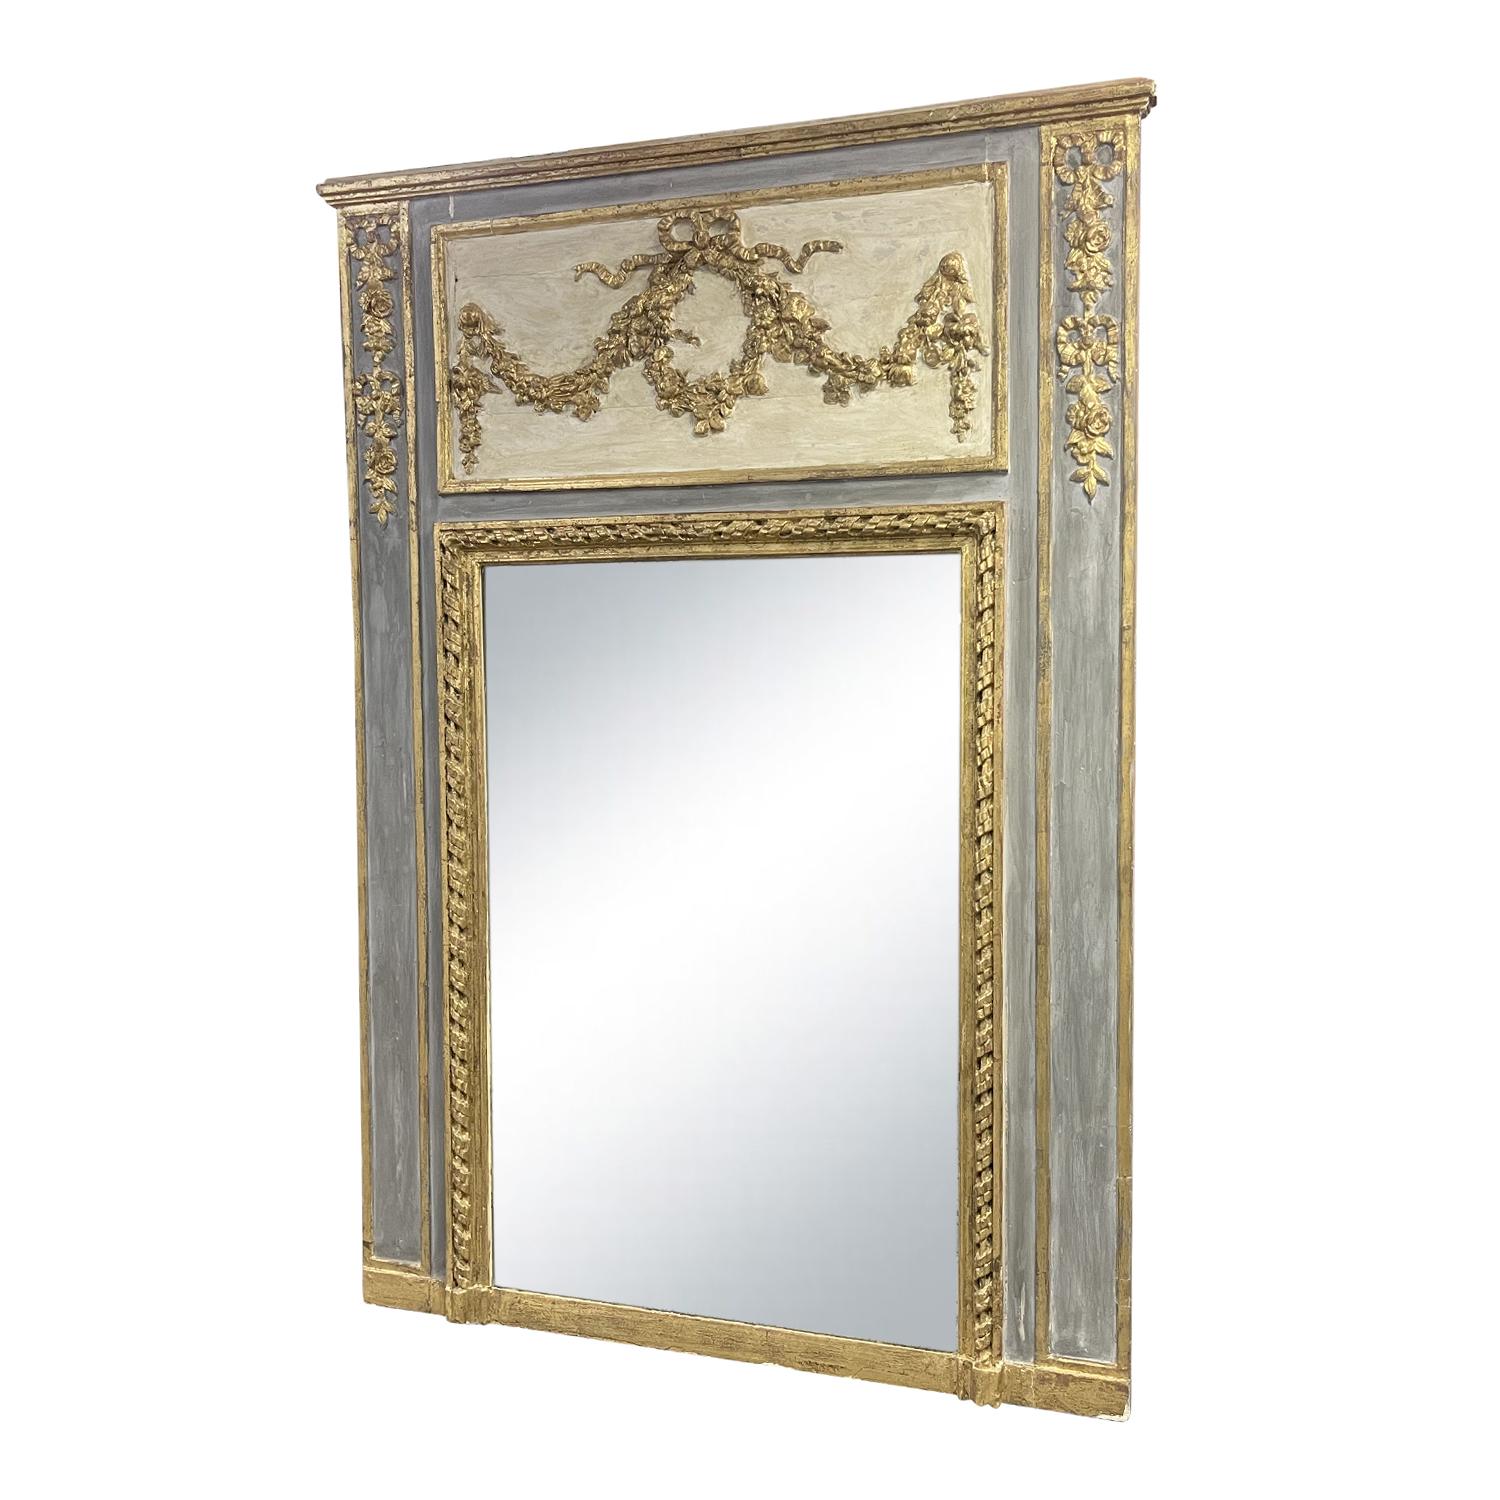 Ein antiker französischer Spiegel aus dem 19. Jahrhundert, patiniert in grau-blauem Finish. Teilweise vergoldetes Holz und originales Spiegelglas, in gutem Zustand. Die Oberseite des Spiegelrahmens im Louis XVI-Stil ist üppig verziert und vergoldet